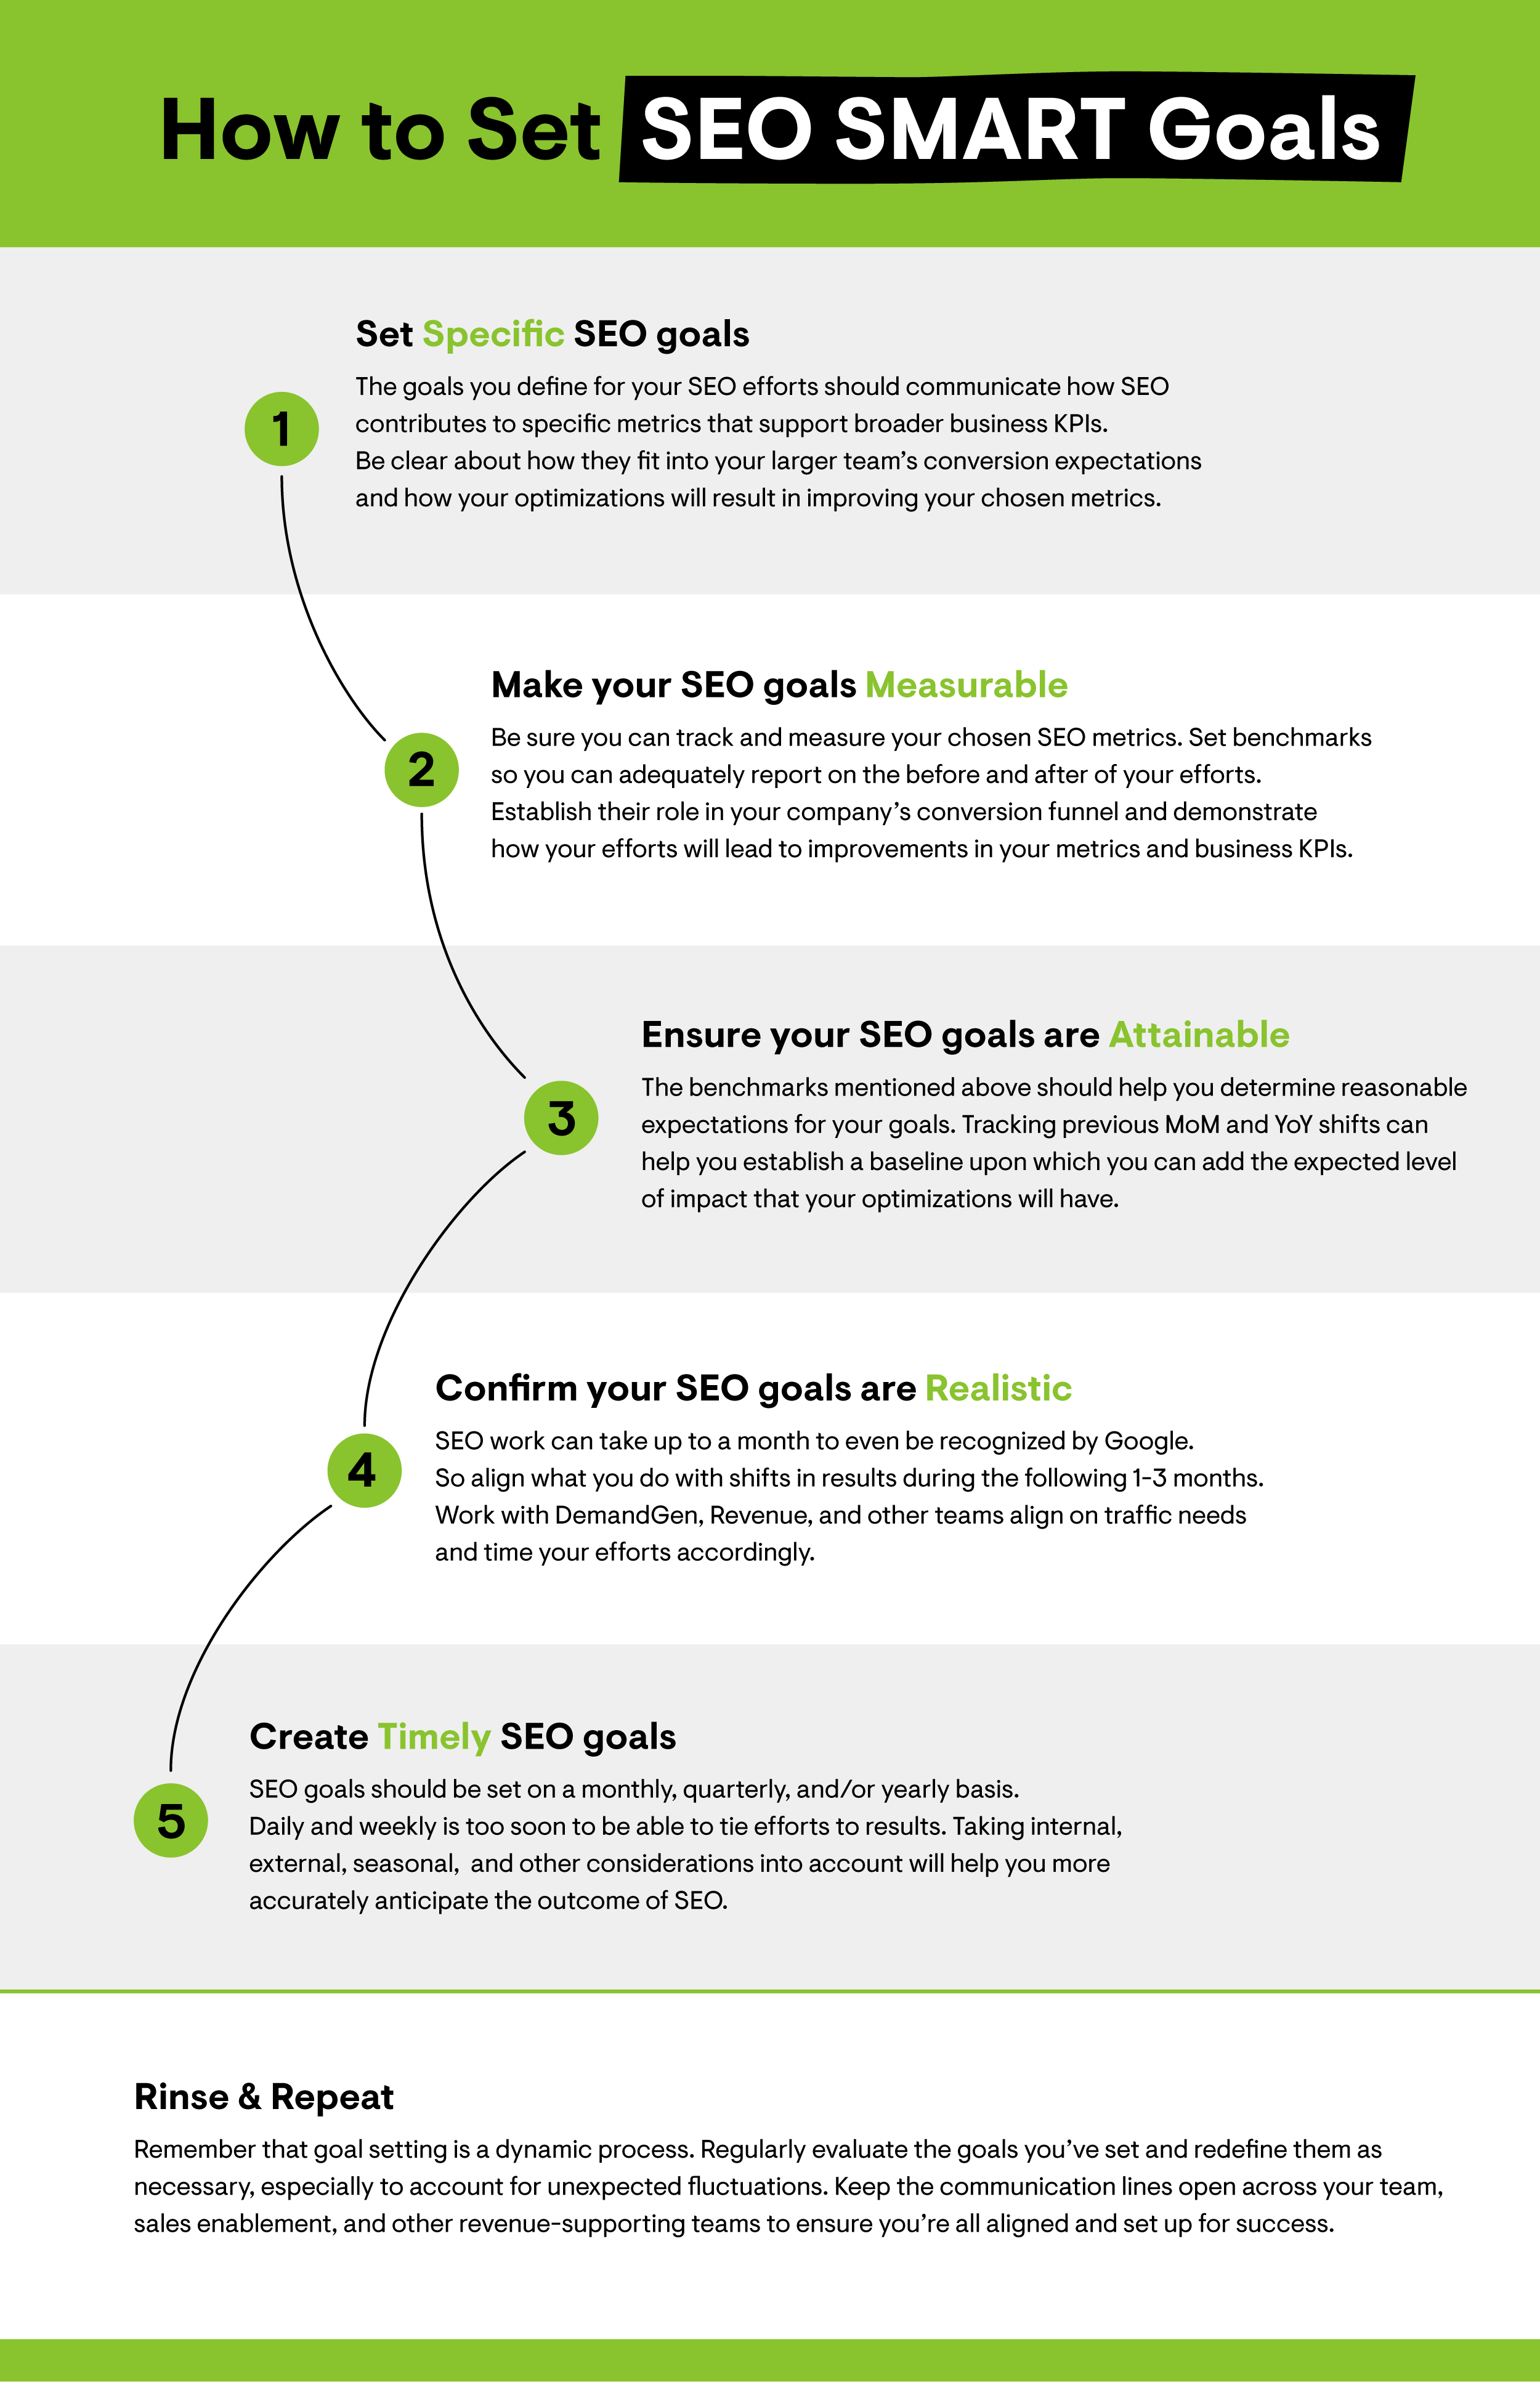 Infografía sobre cómo establecer objetivos SMART SEO